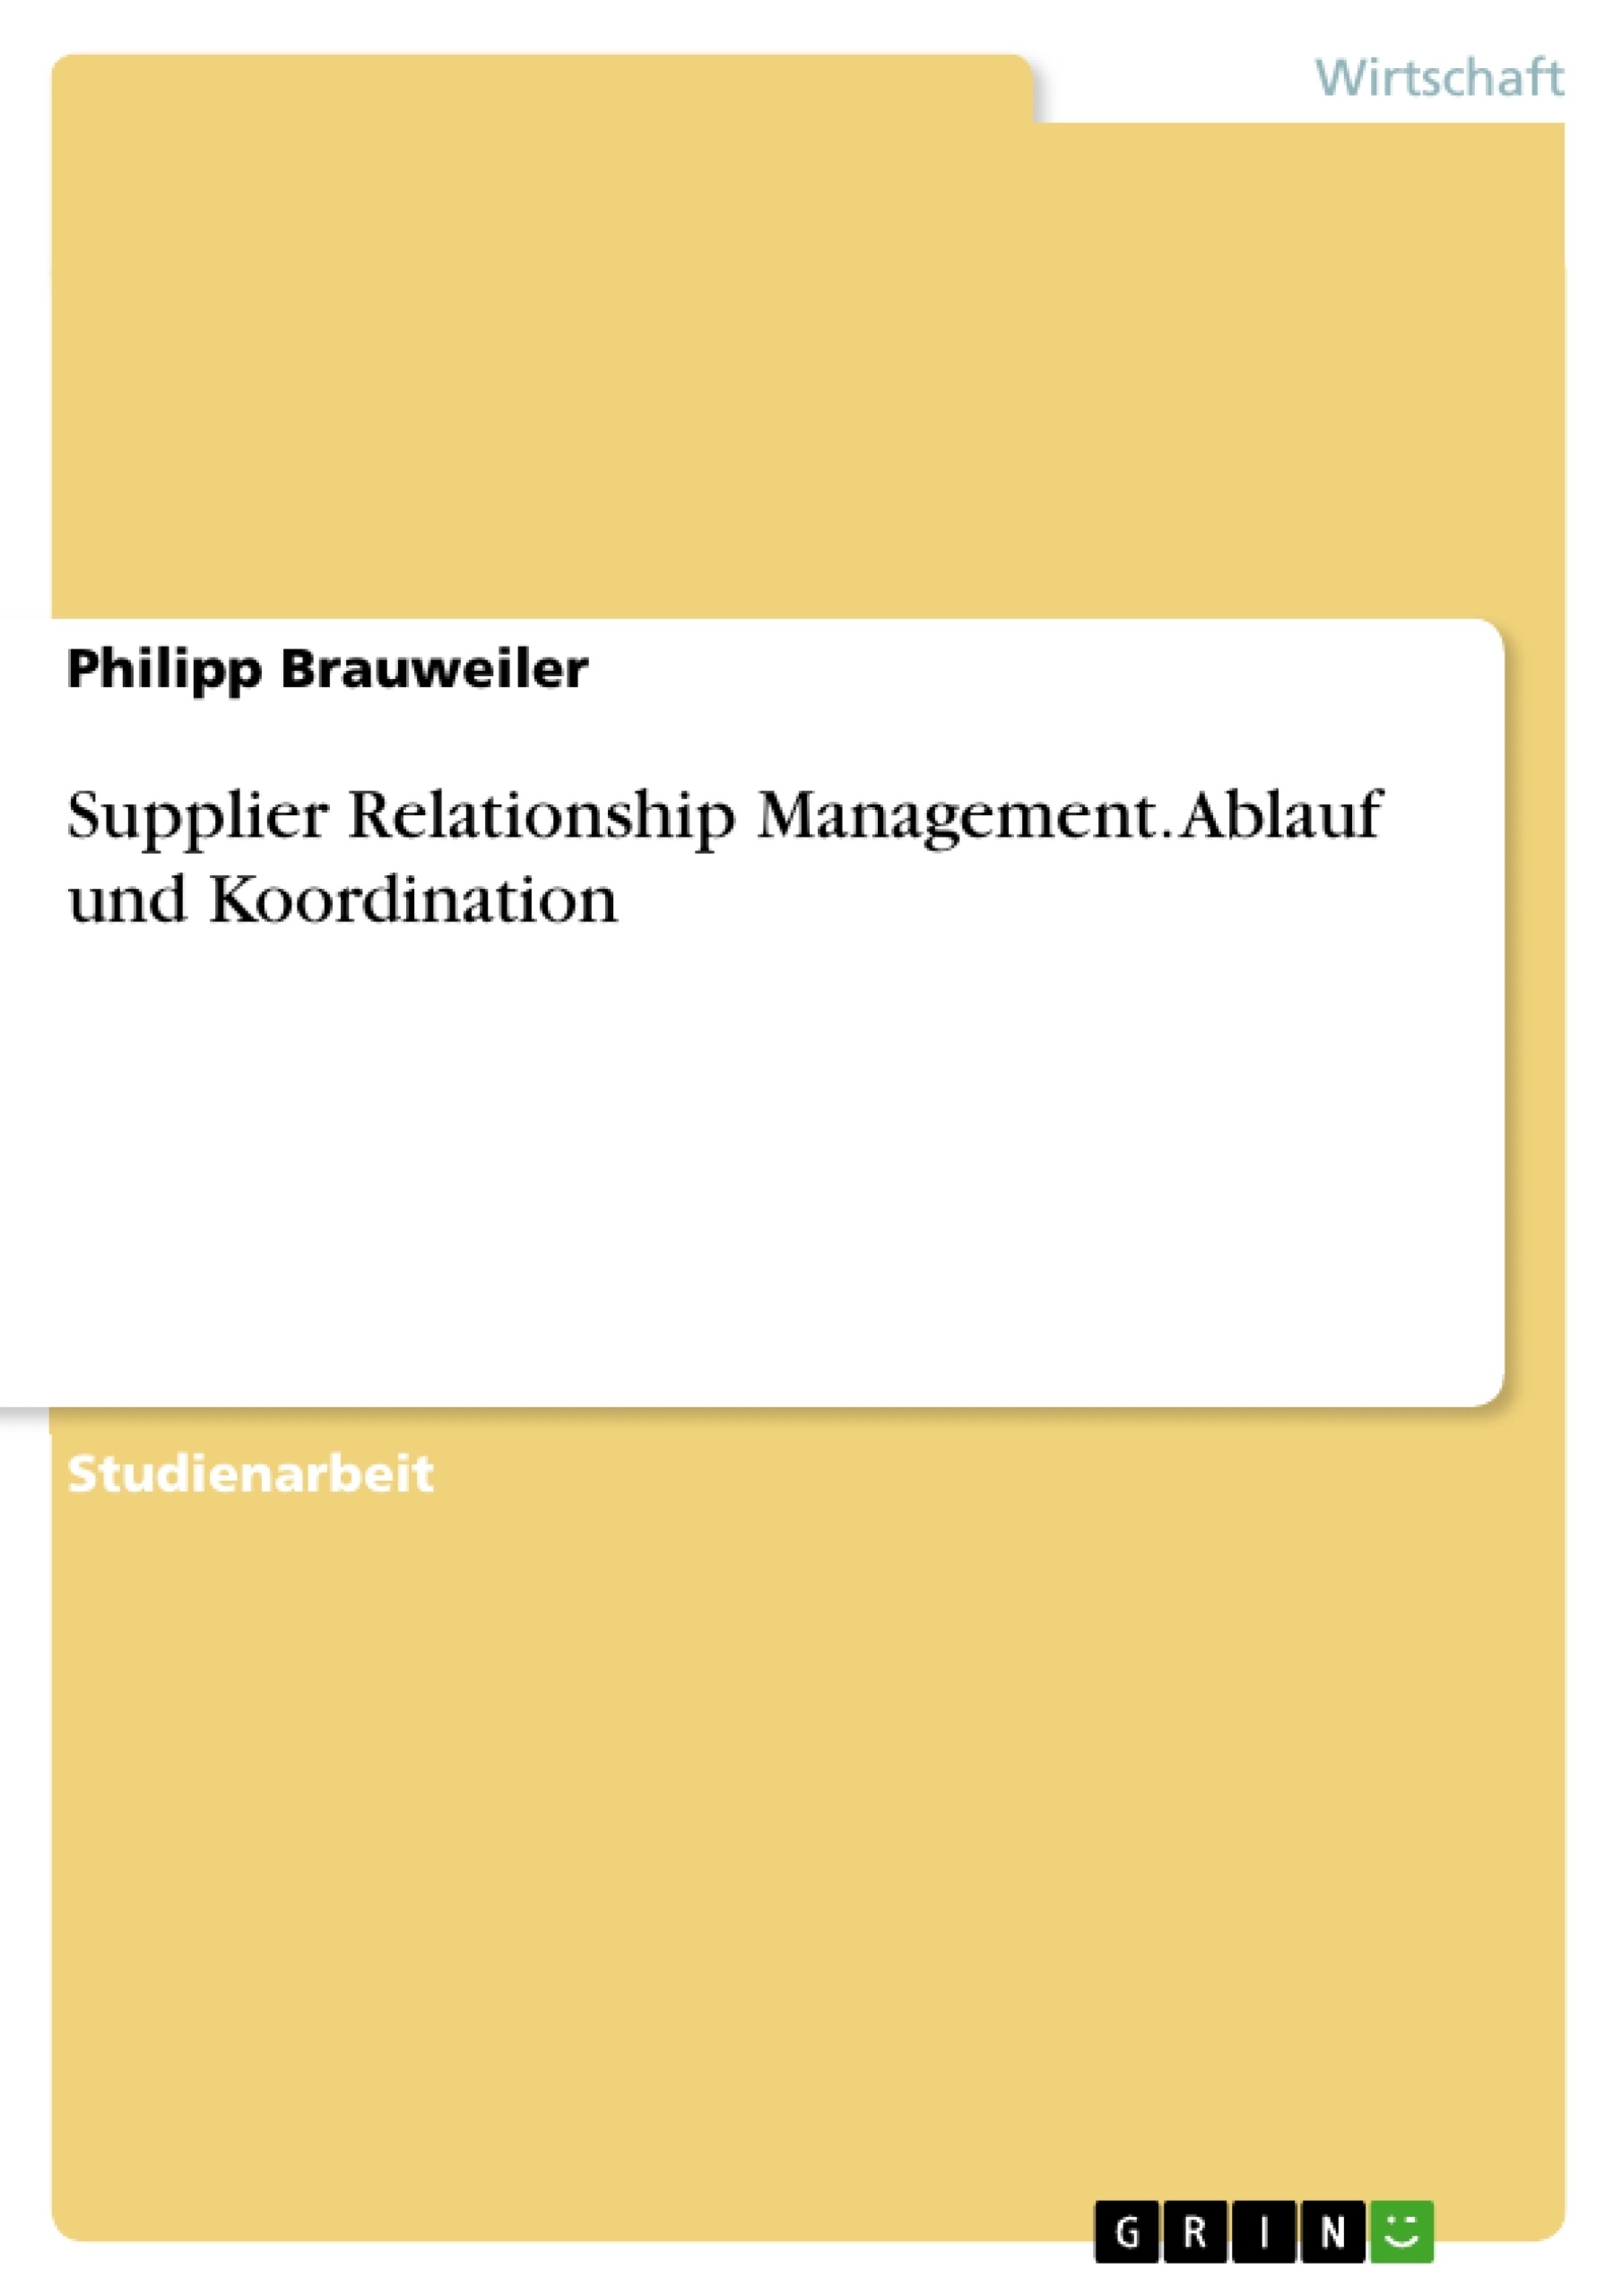 Title: Supplier Relationship Management. Ablauf und Koordination